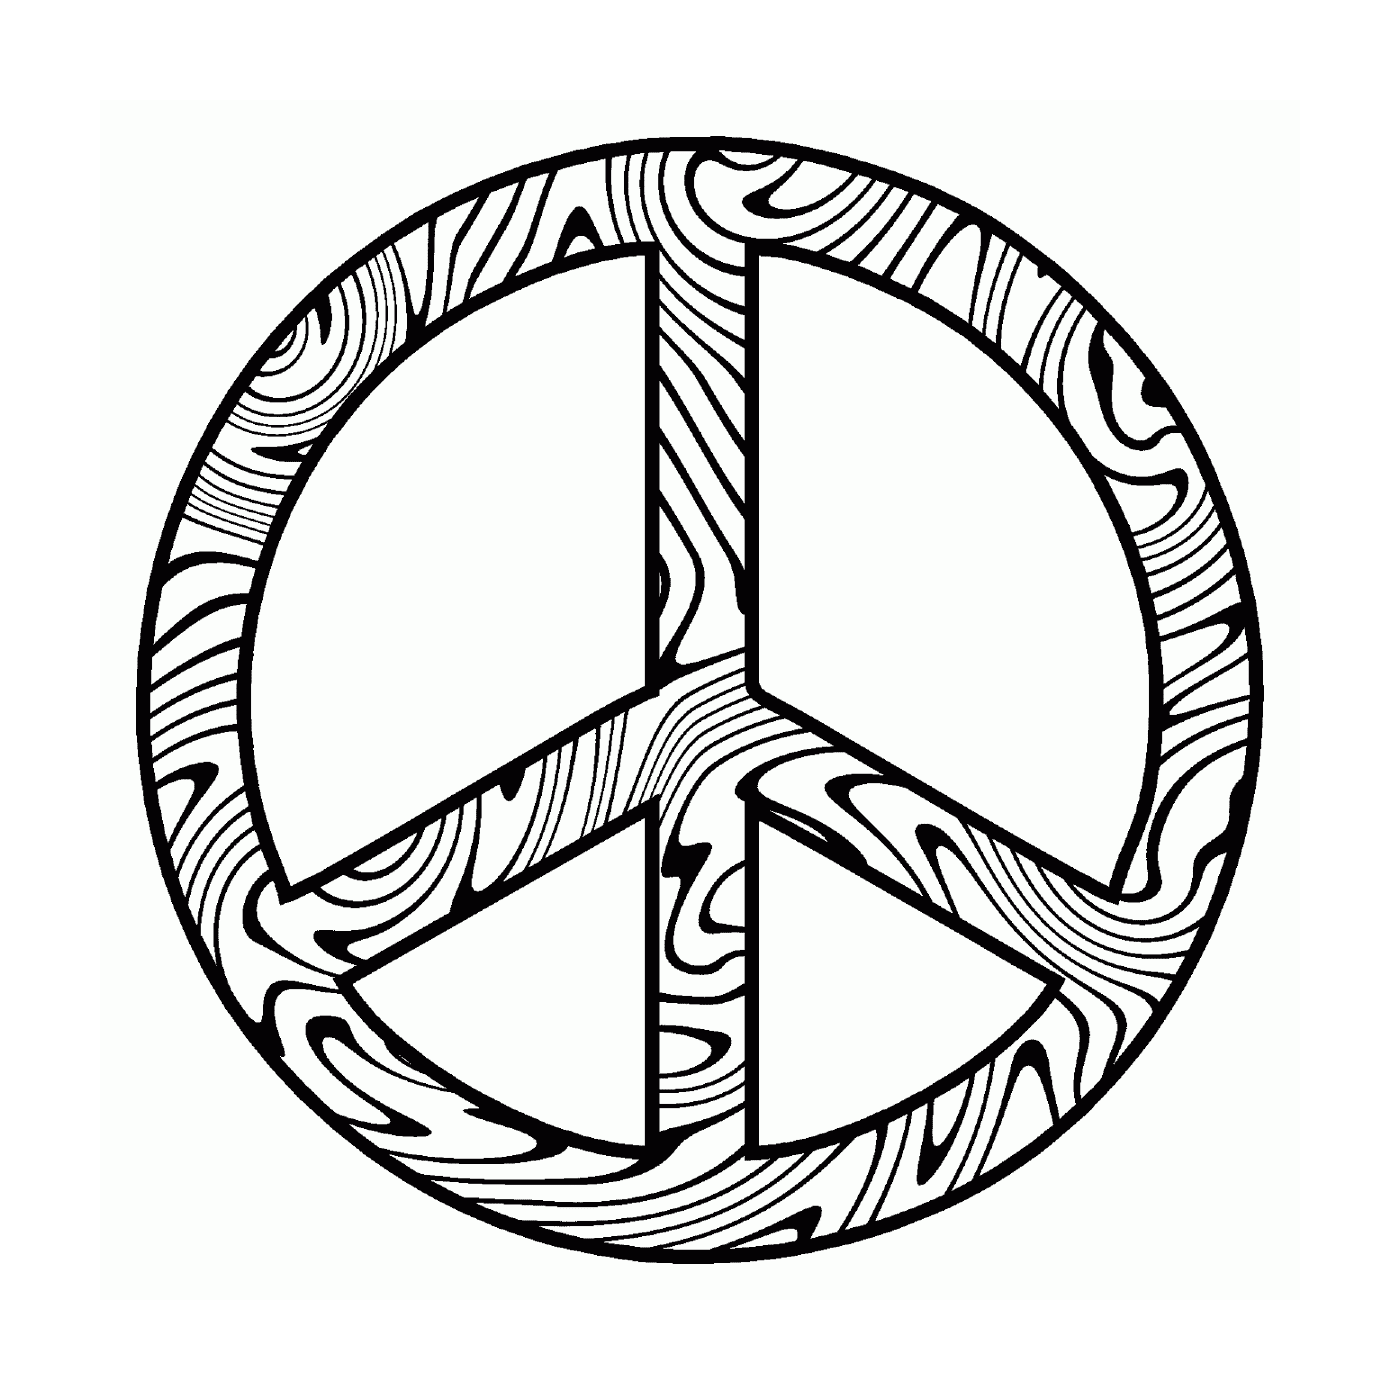  Simbolo abstracto de la paz 